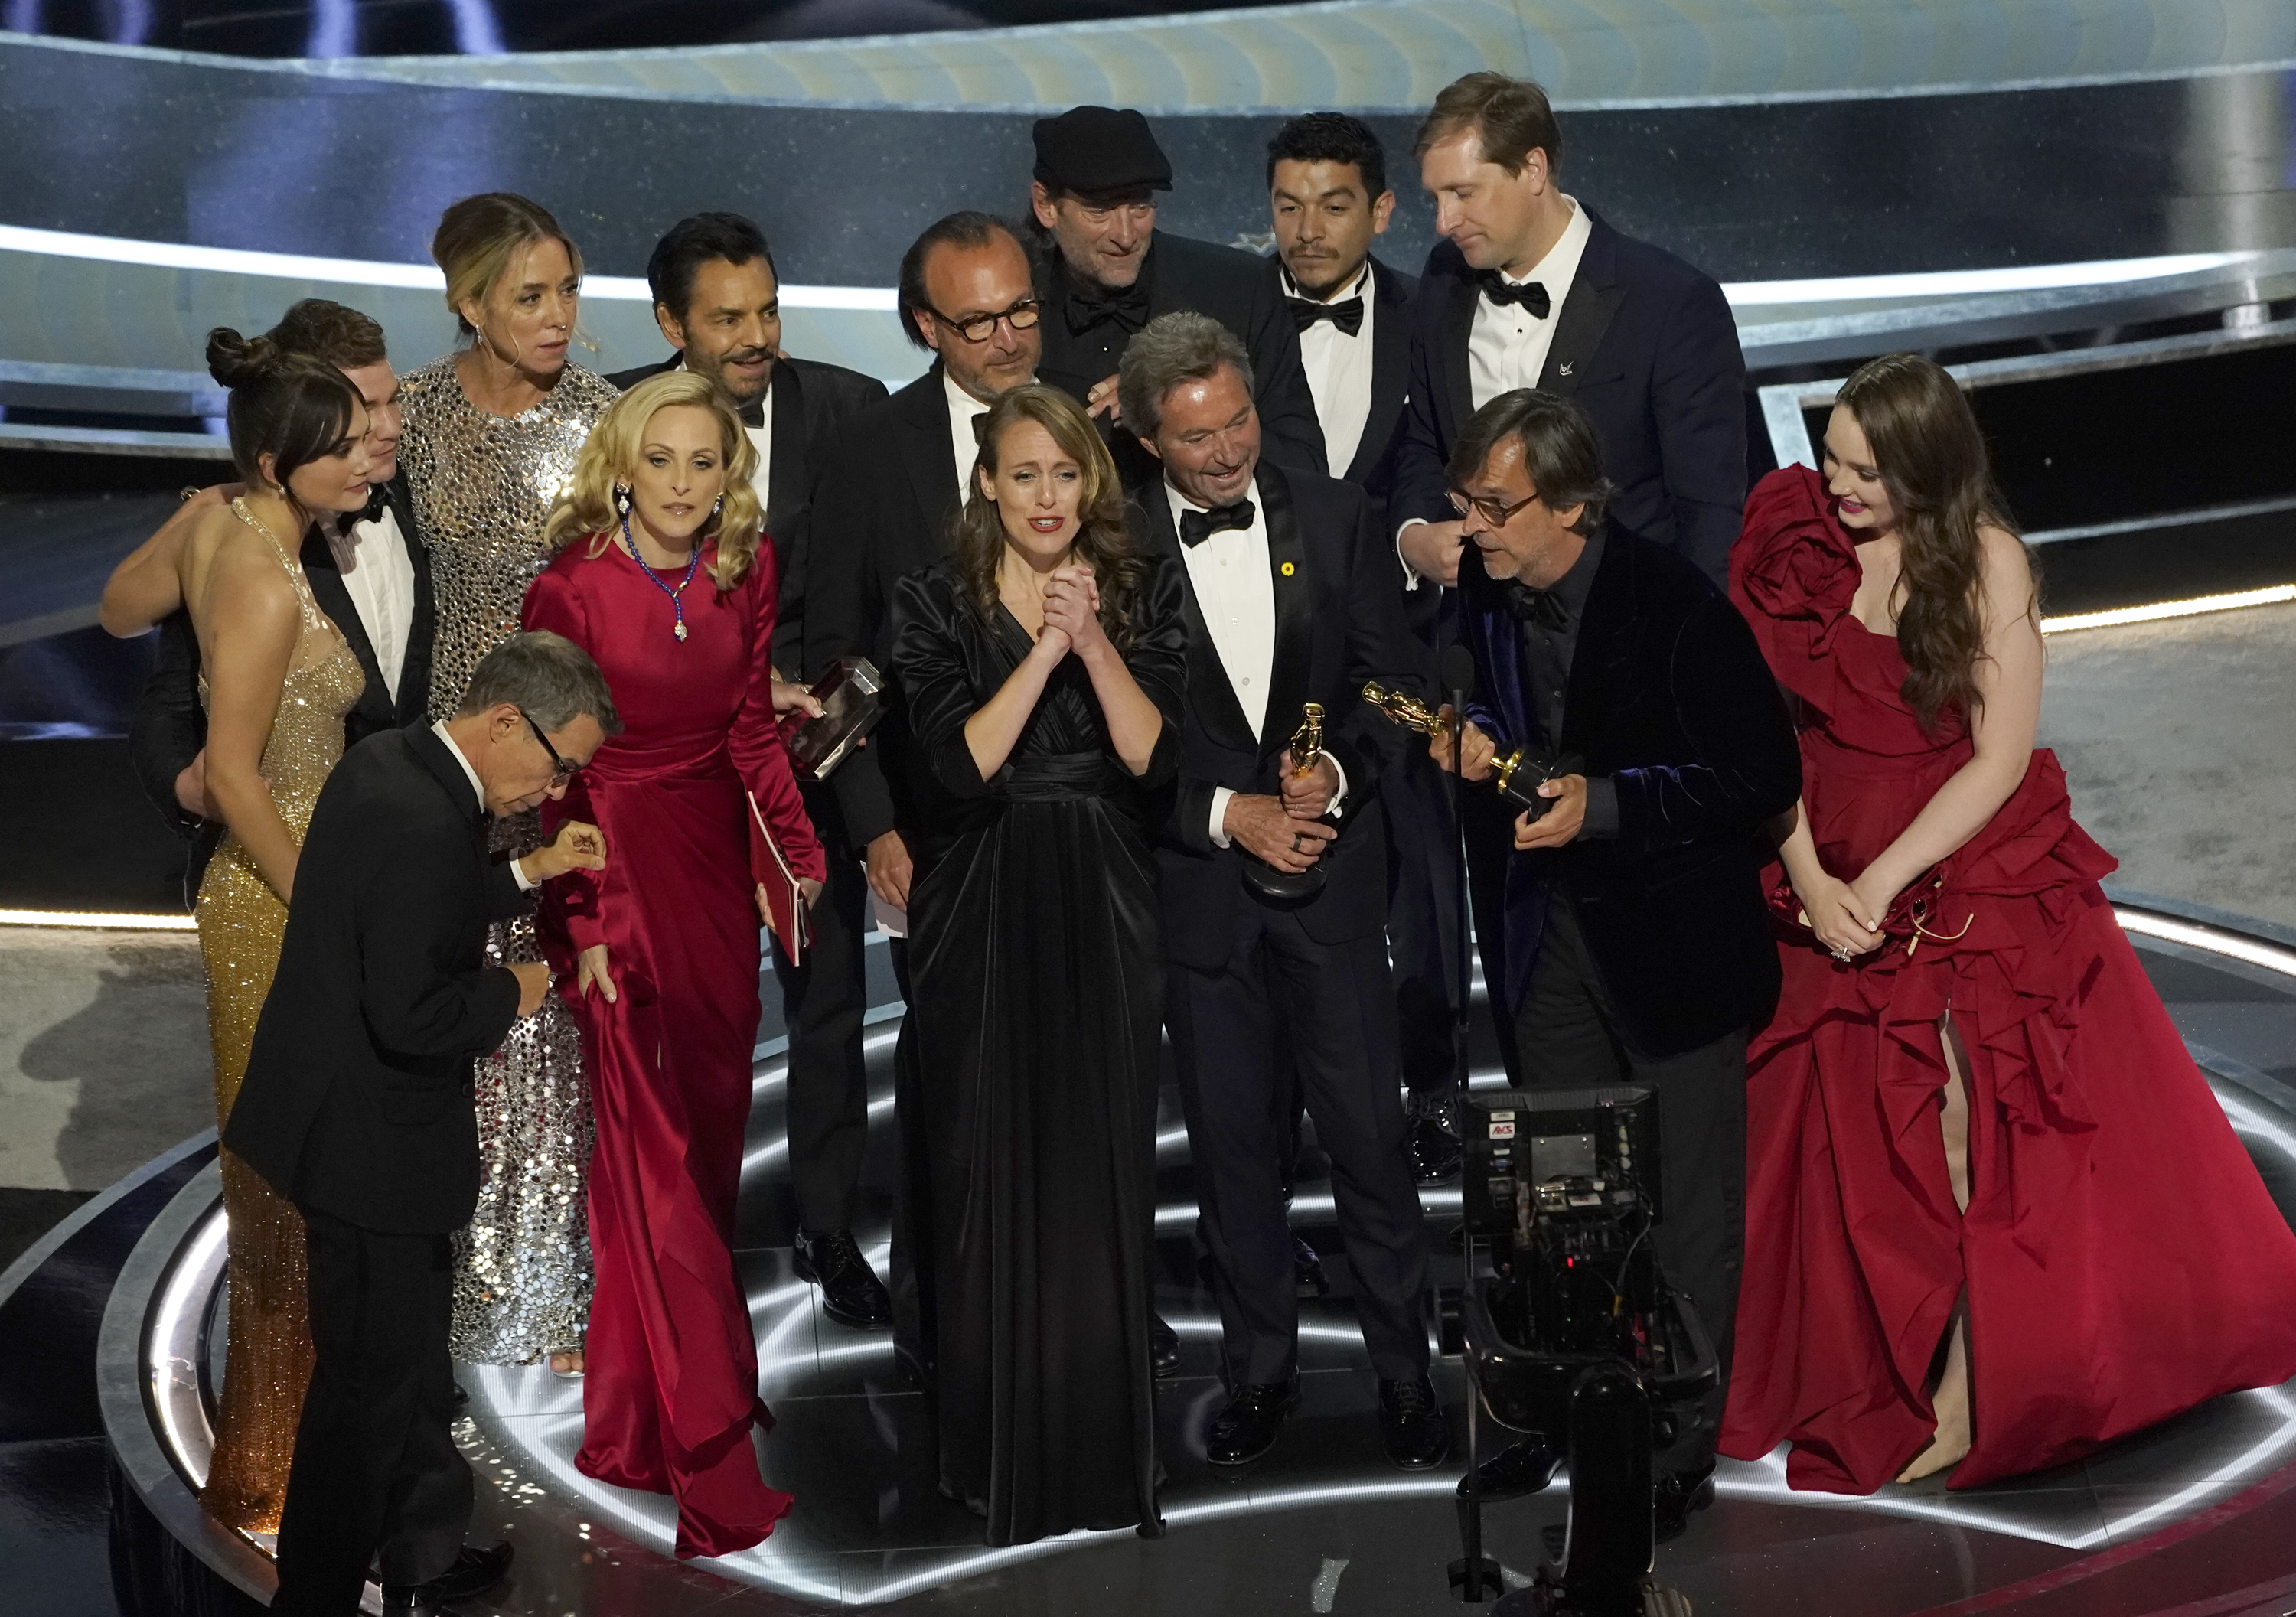 Zendaya and Timothee Chalamat Reunite at the 2022 Oscars